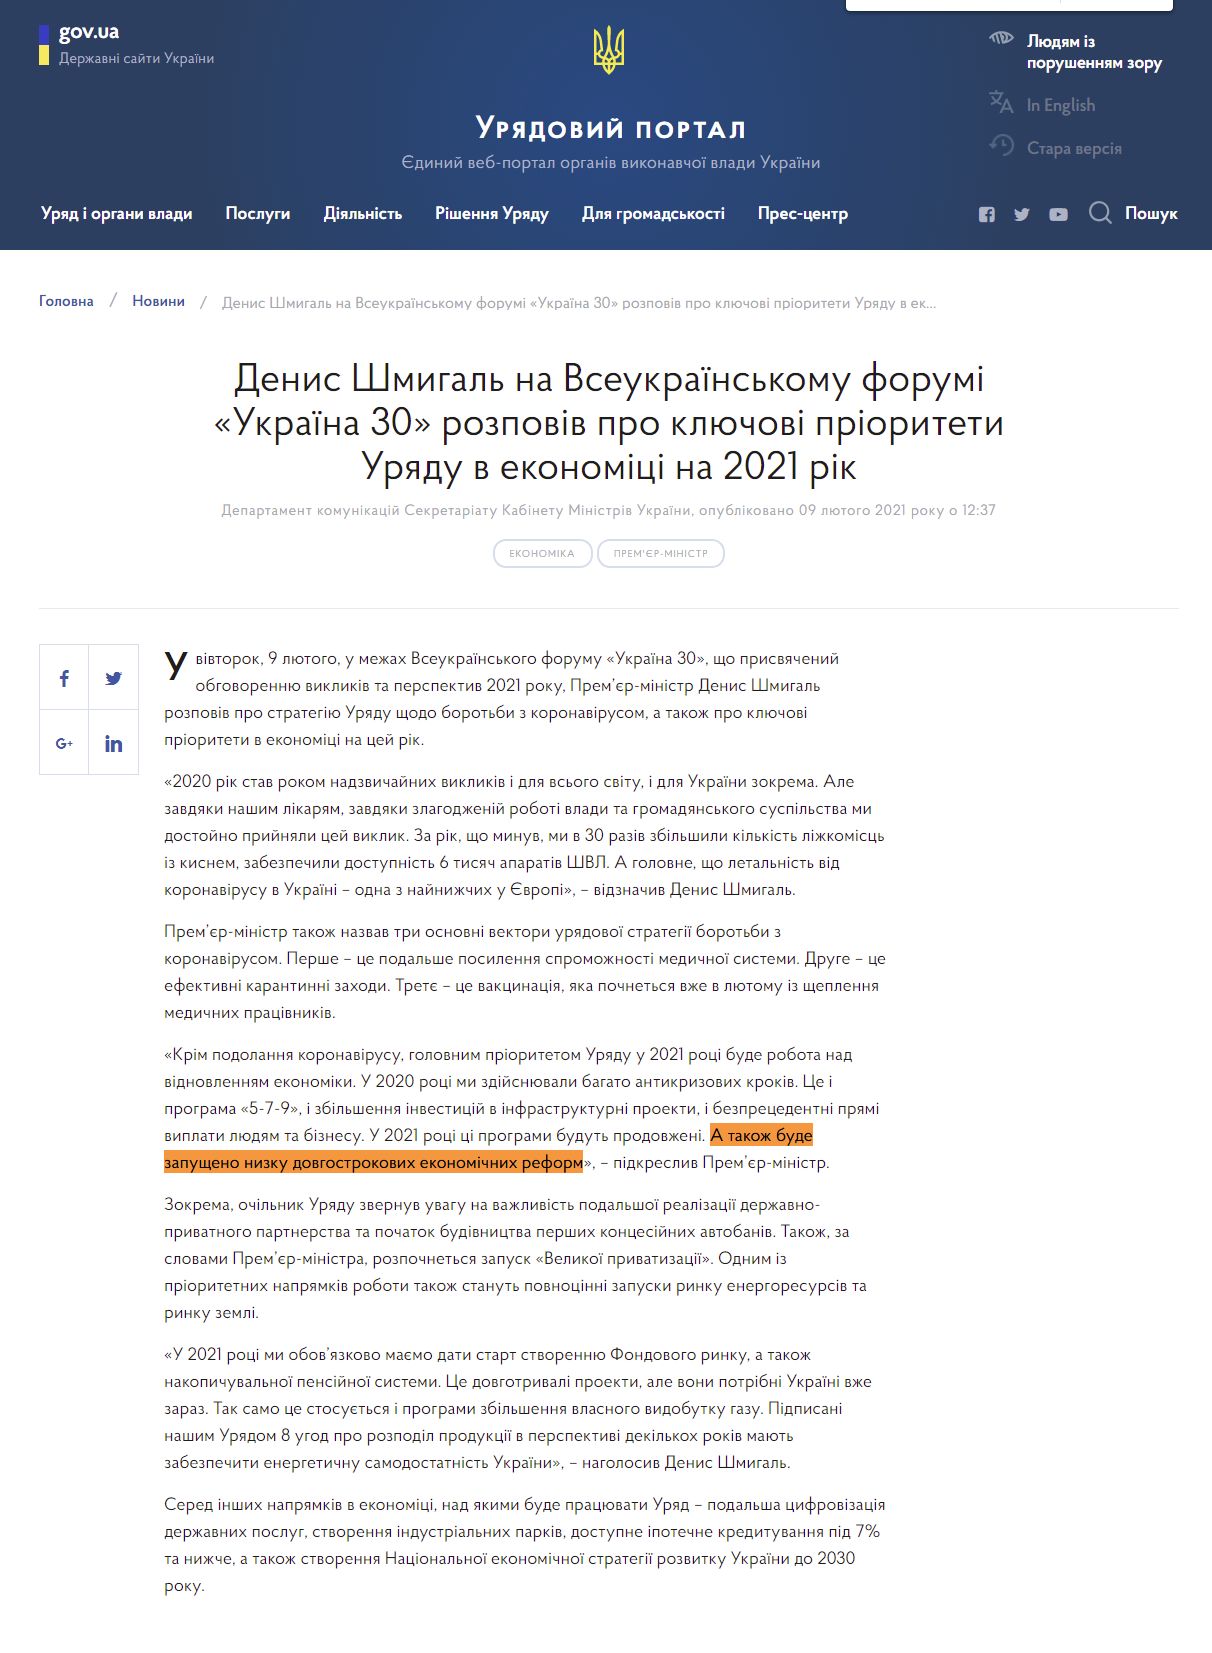 https://www.kmu.gov.ua/news/denis-shmigal-na-vseukrayinskomu-forumi-ukrayina-30-rozpoviv-pro-klyuchovi-prioriteti-uryadu-v-ekonomici-na-2021-rik